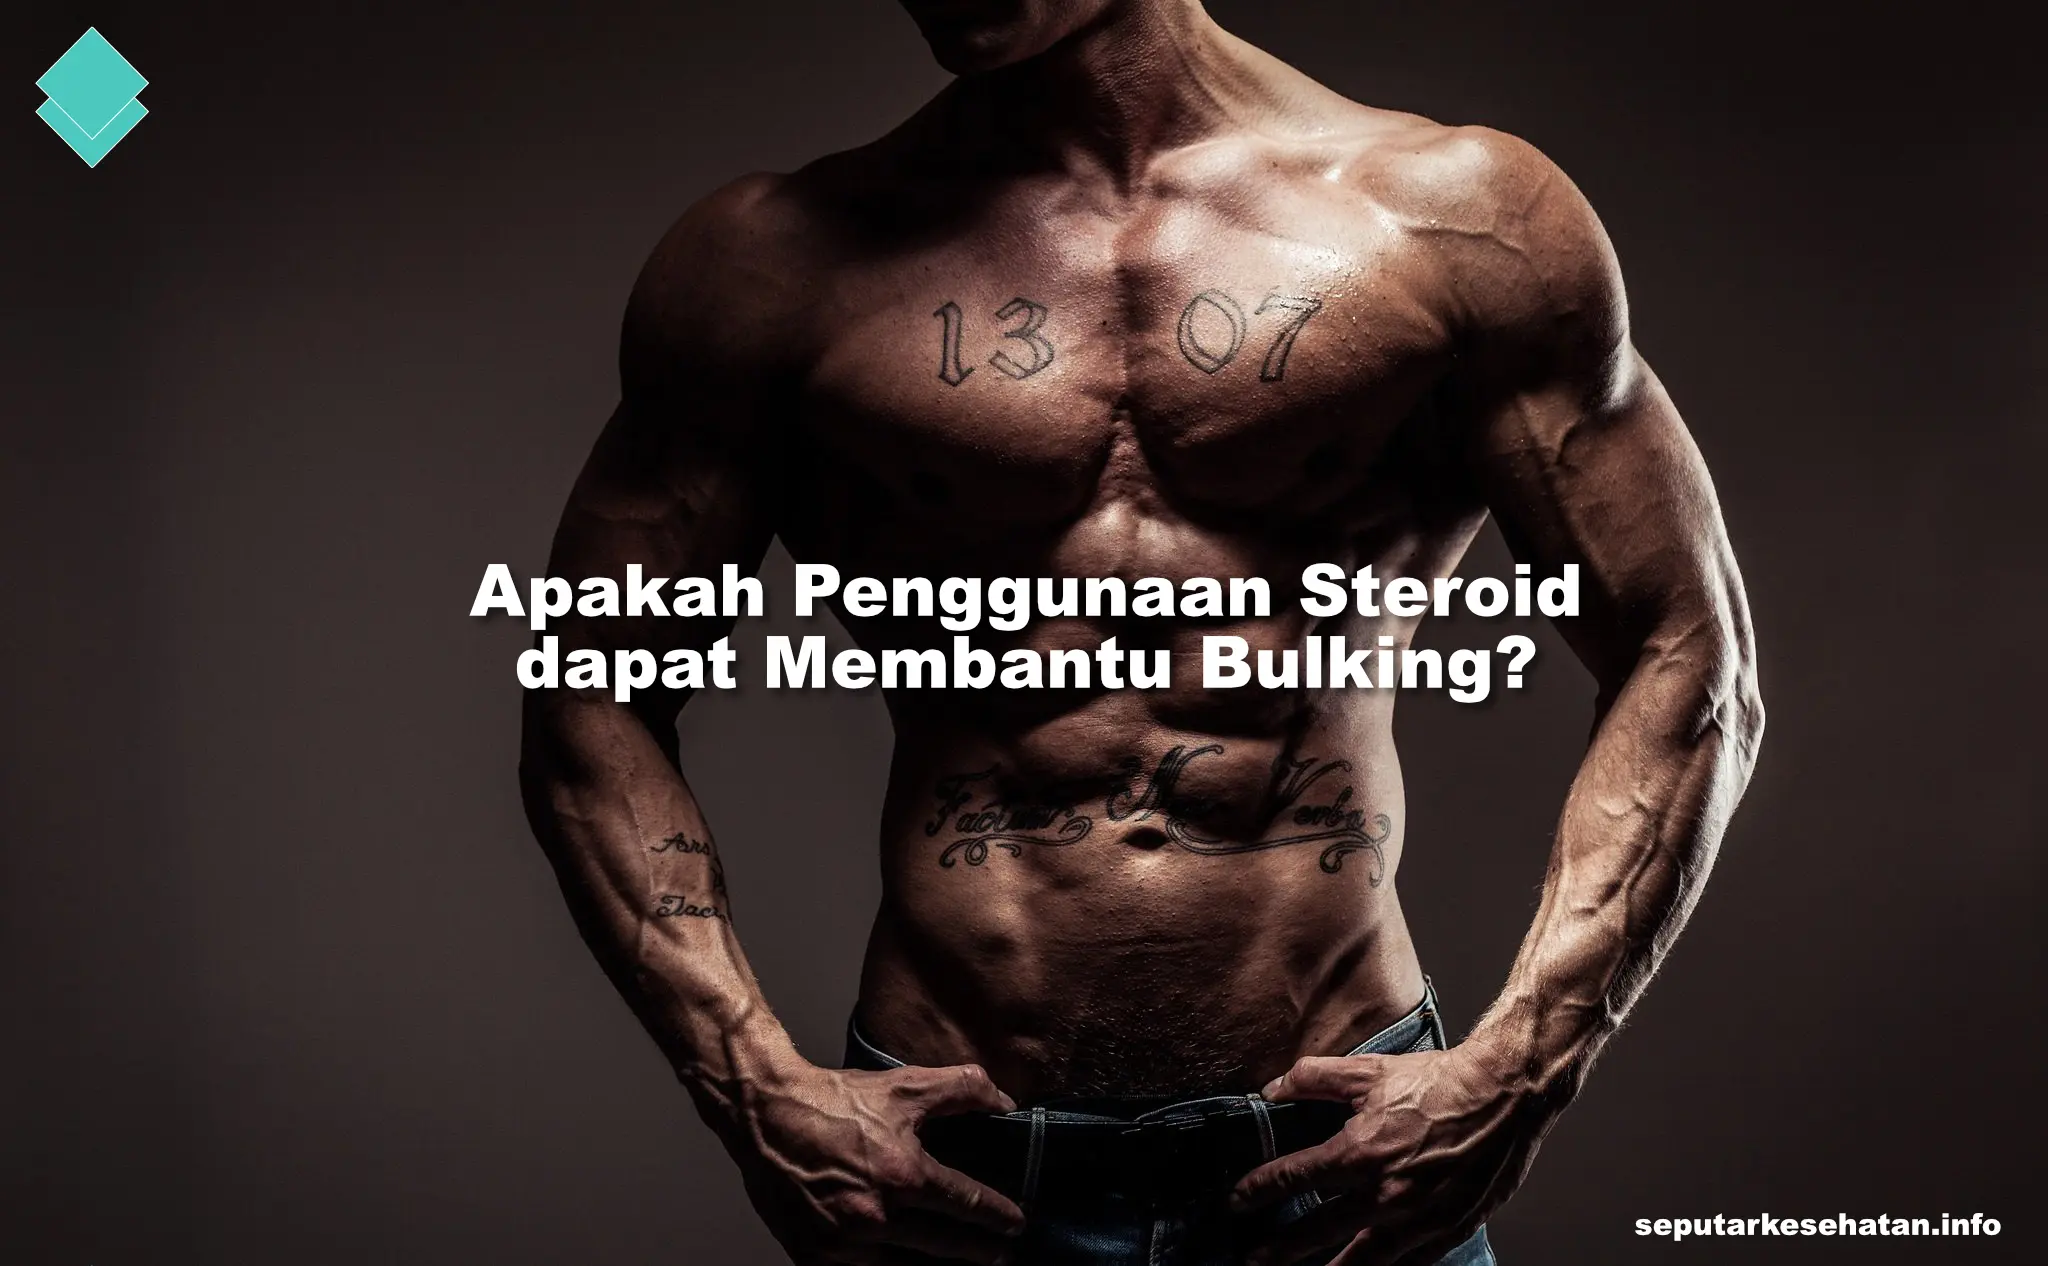 Apakah Penggunaan Steroid dapat Membantu Bulking